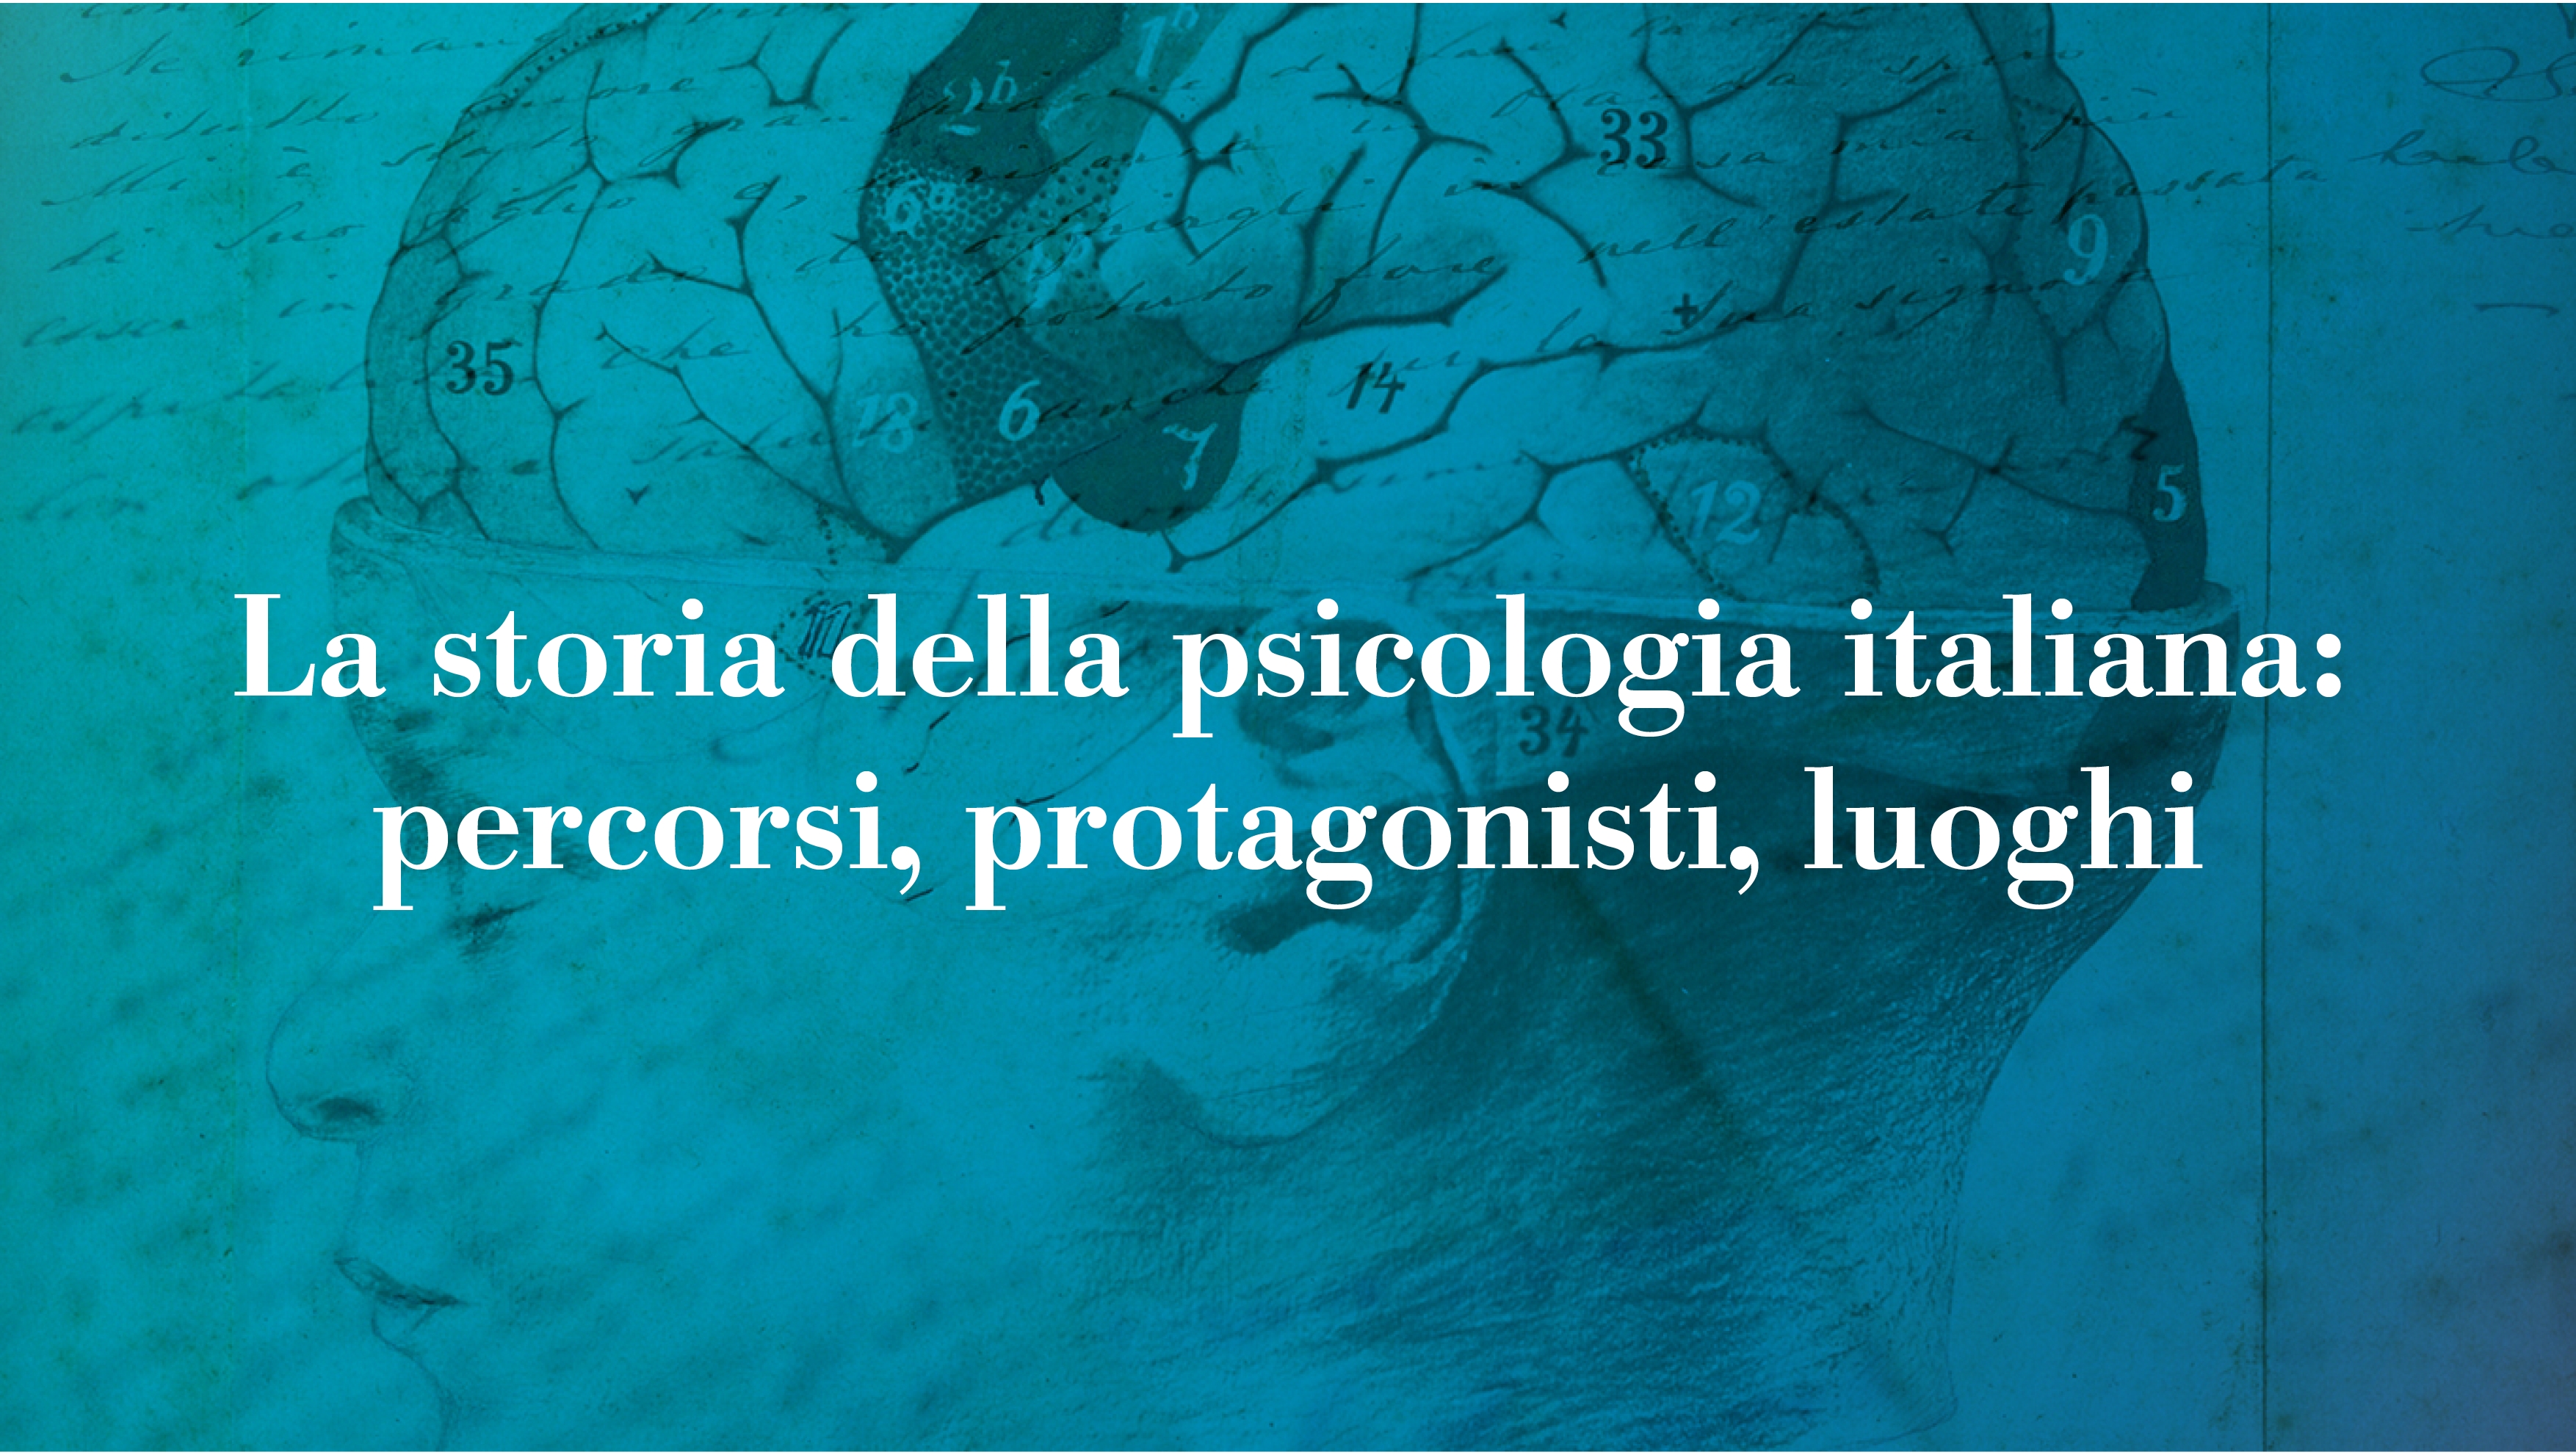 Una mostra virtuale sulla storia della psicologia italiana